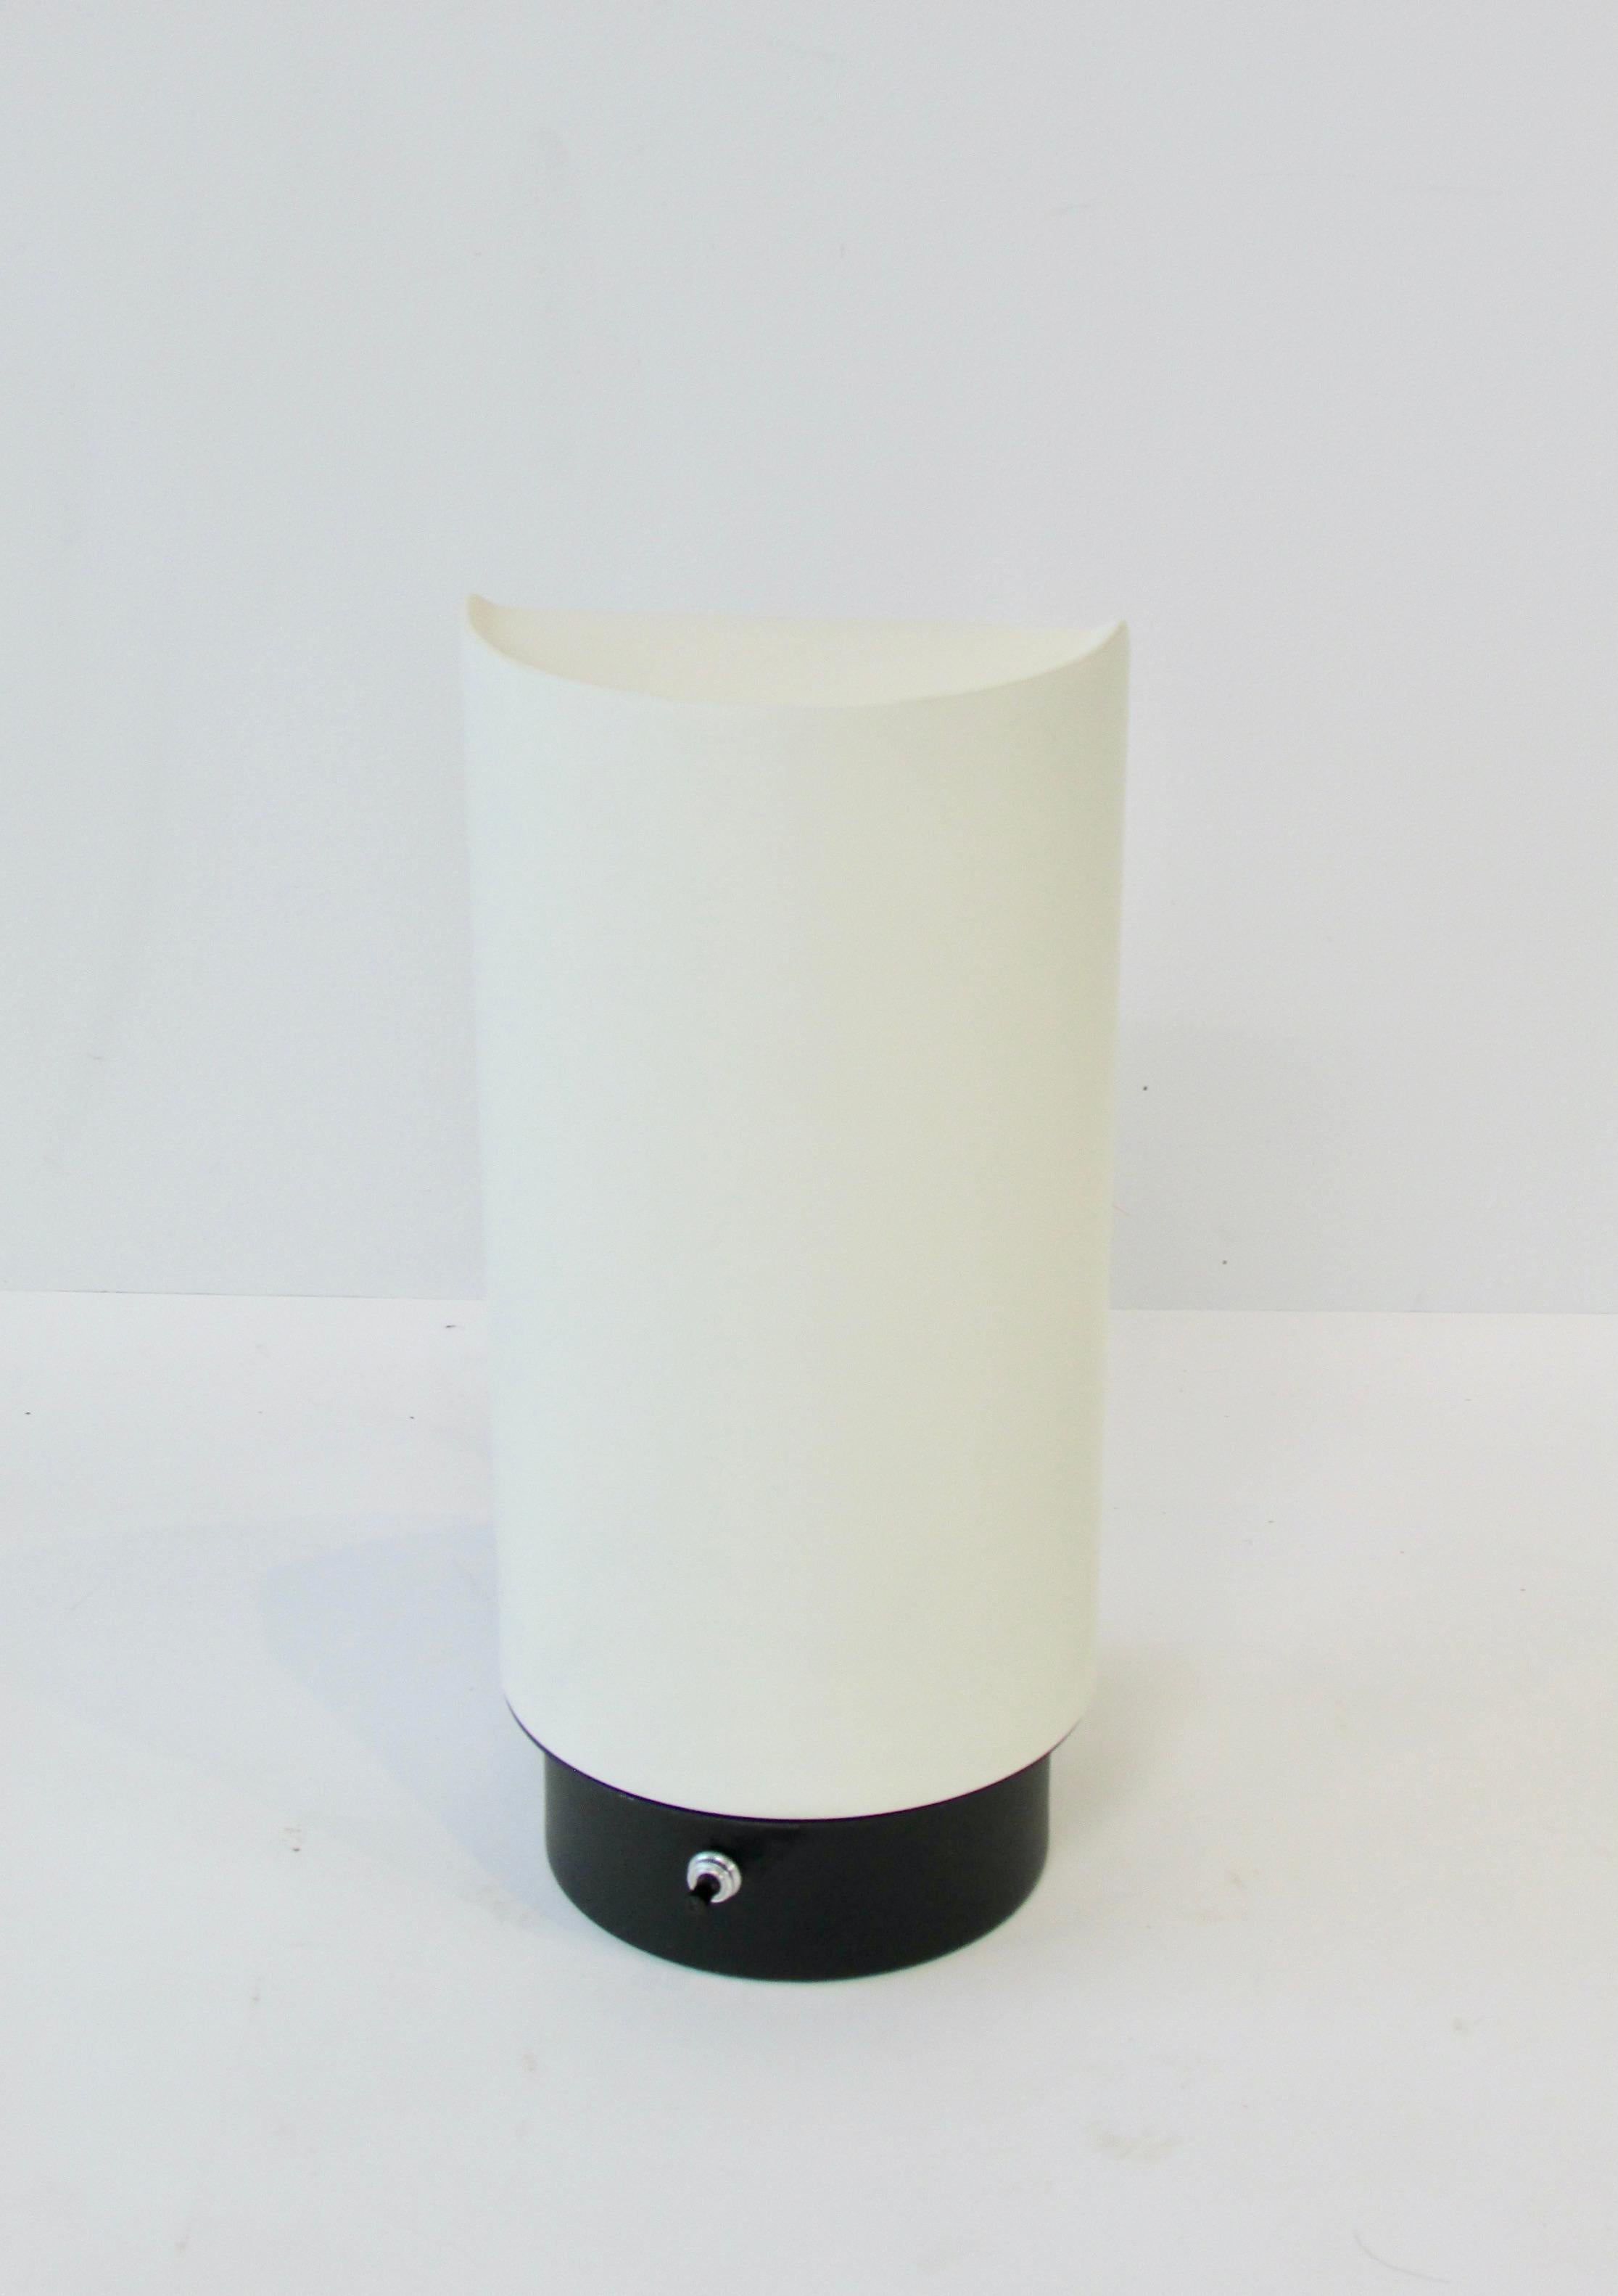 Forme cylindrique en laque blanche avec ouverture en forme de tarte au dos. Design/One par Gerald Thurston pour Lightolier. La lampe semble être comme neuve. Conserve les deux labels d'origine.